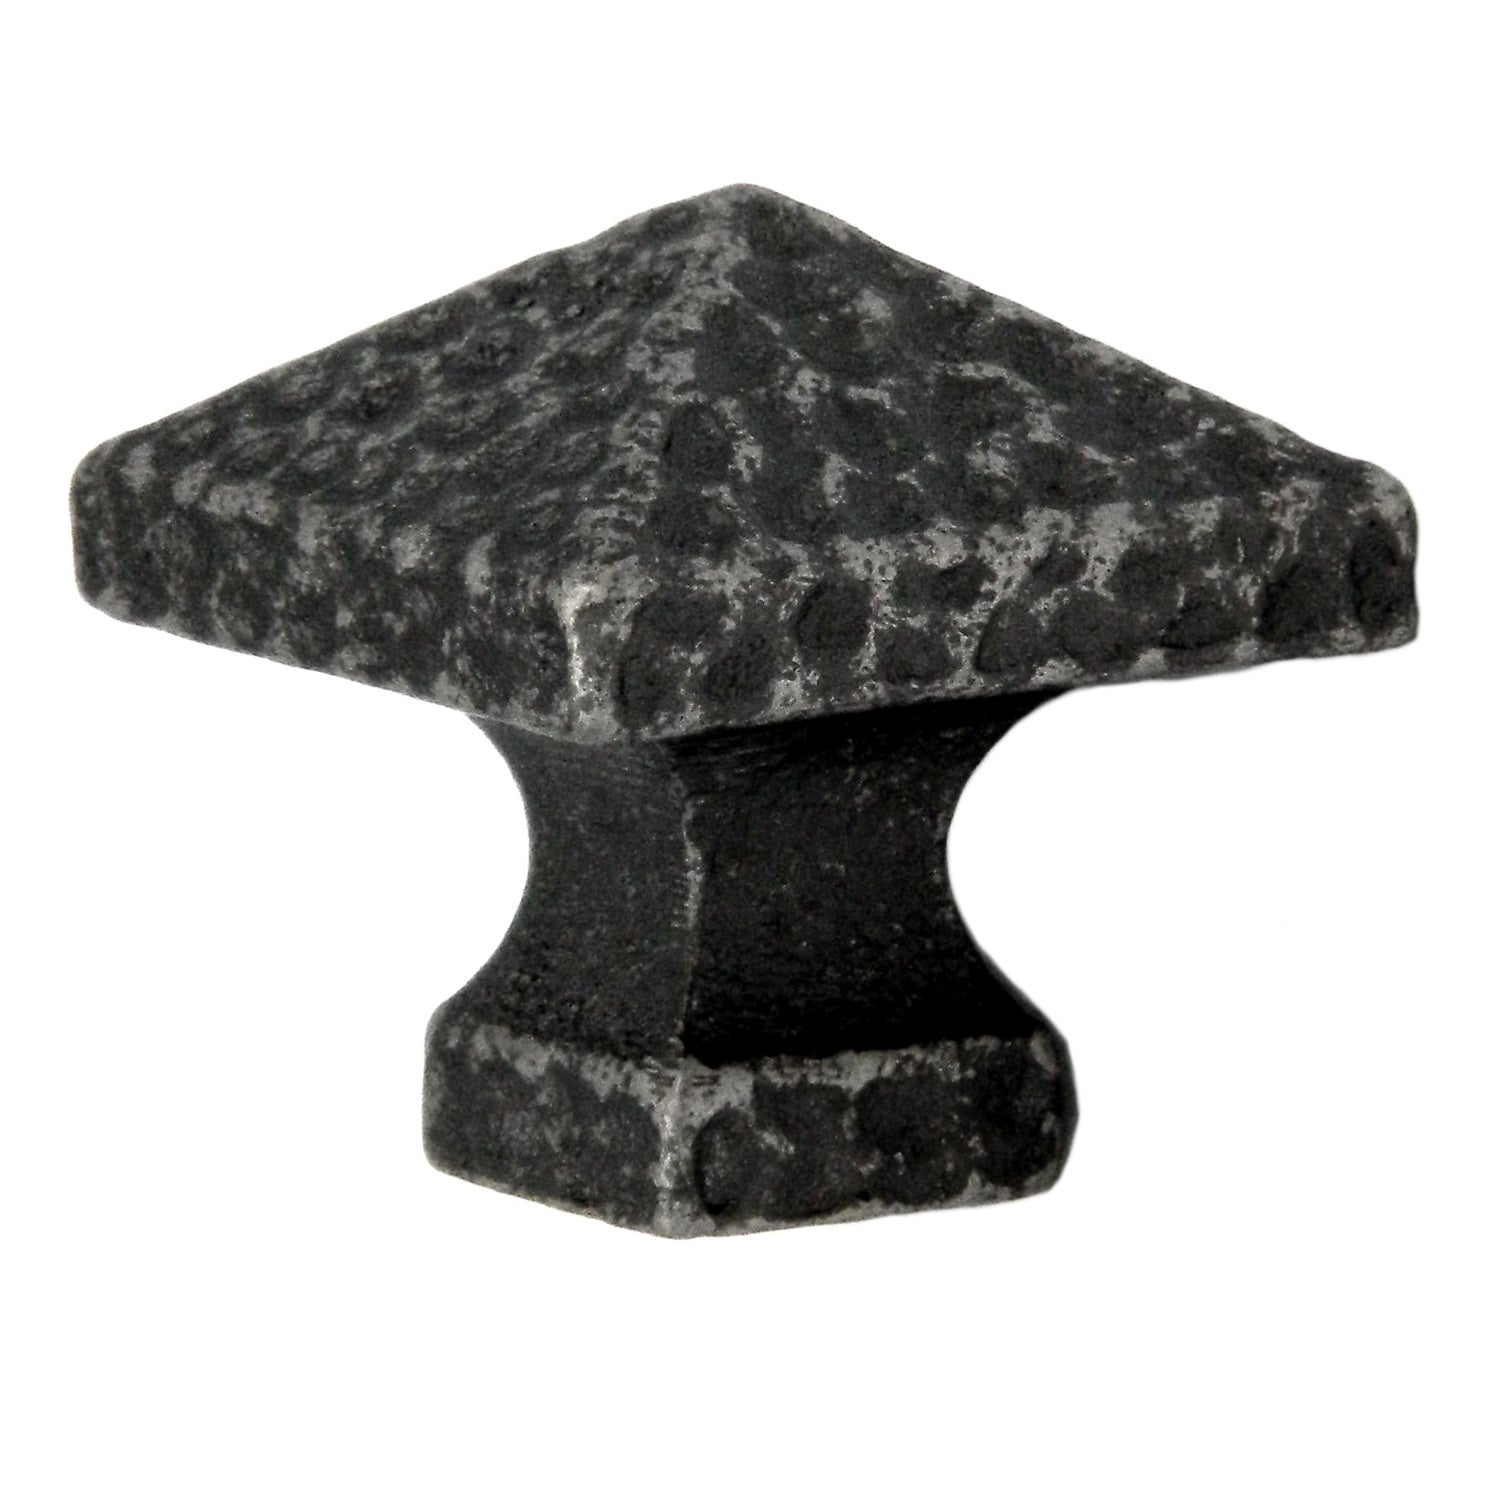 Paquete de 20 perillas de gabinete de latón macizo con forma de pirámide martillada cuadrada de peltre inglés antiguo Belwith Keeler Kingston de 1 1/4" M682